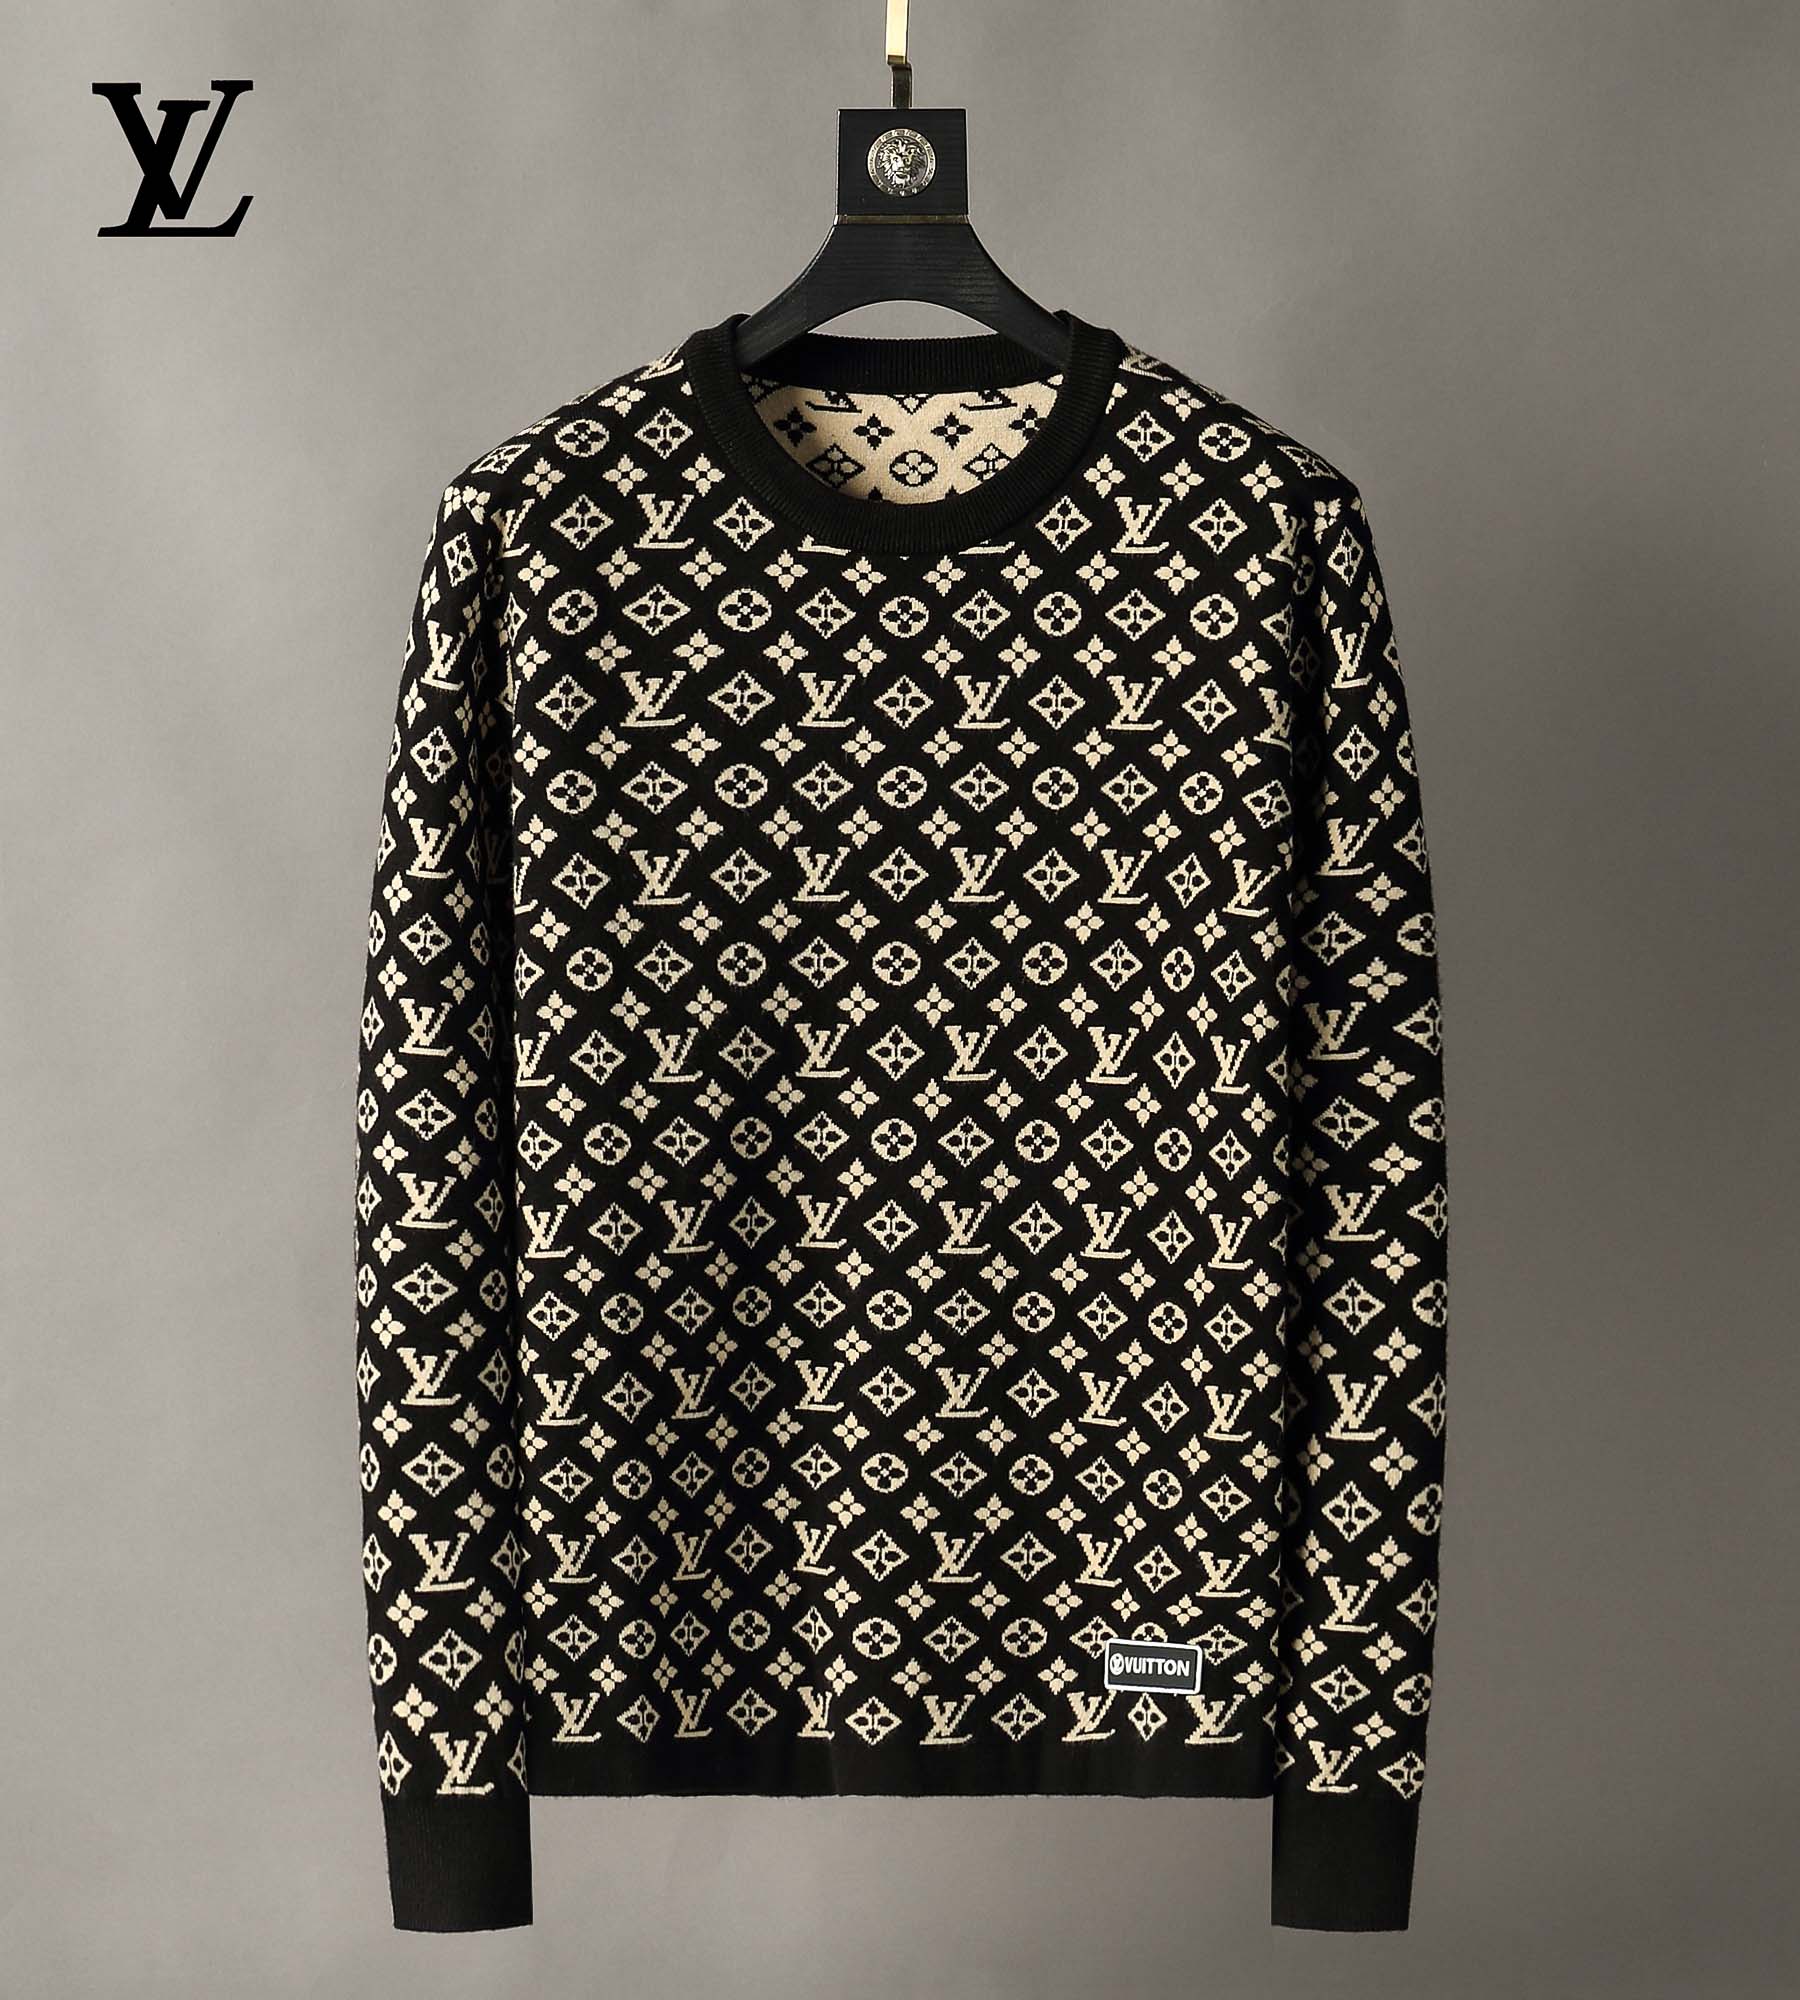 Así es el jersey de ganchillo que Louis Vuitton vende por 6.000 euros